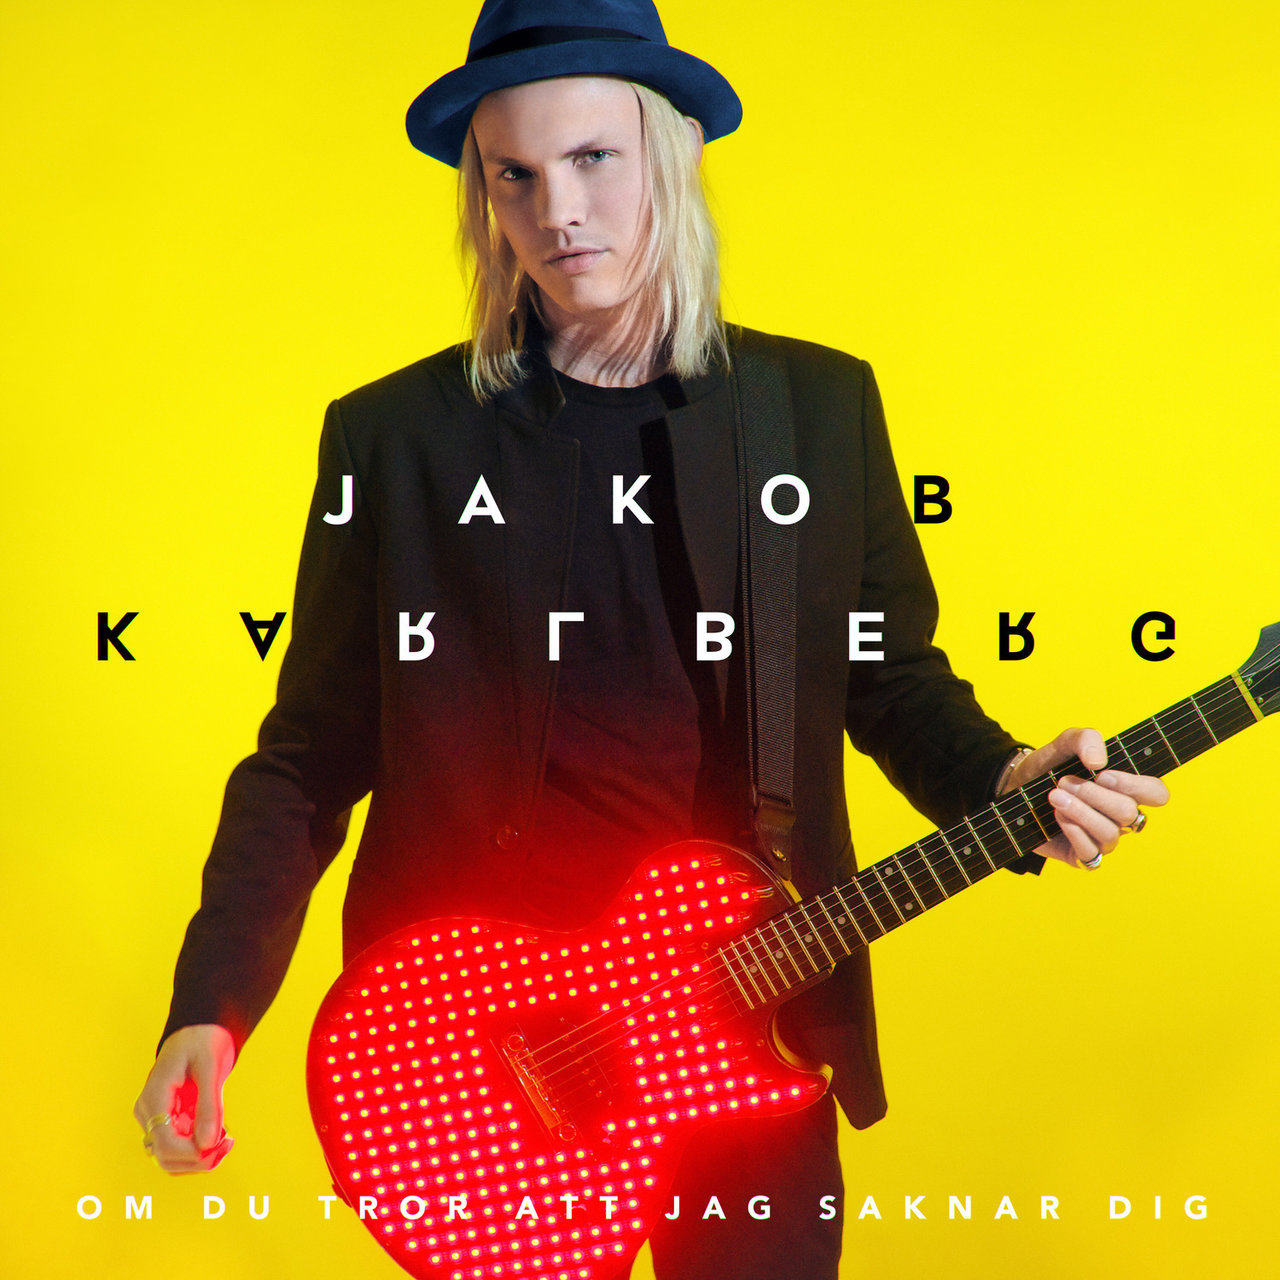 Jakob Karlberg — Om du tror att jag saknar dig cover artwork